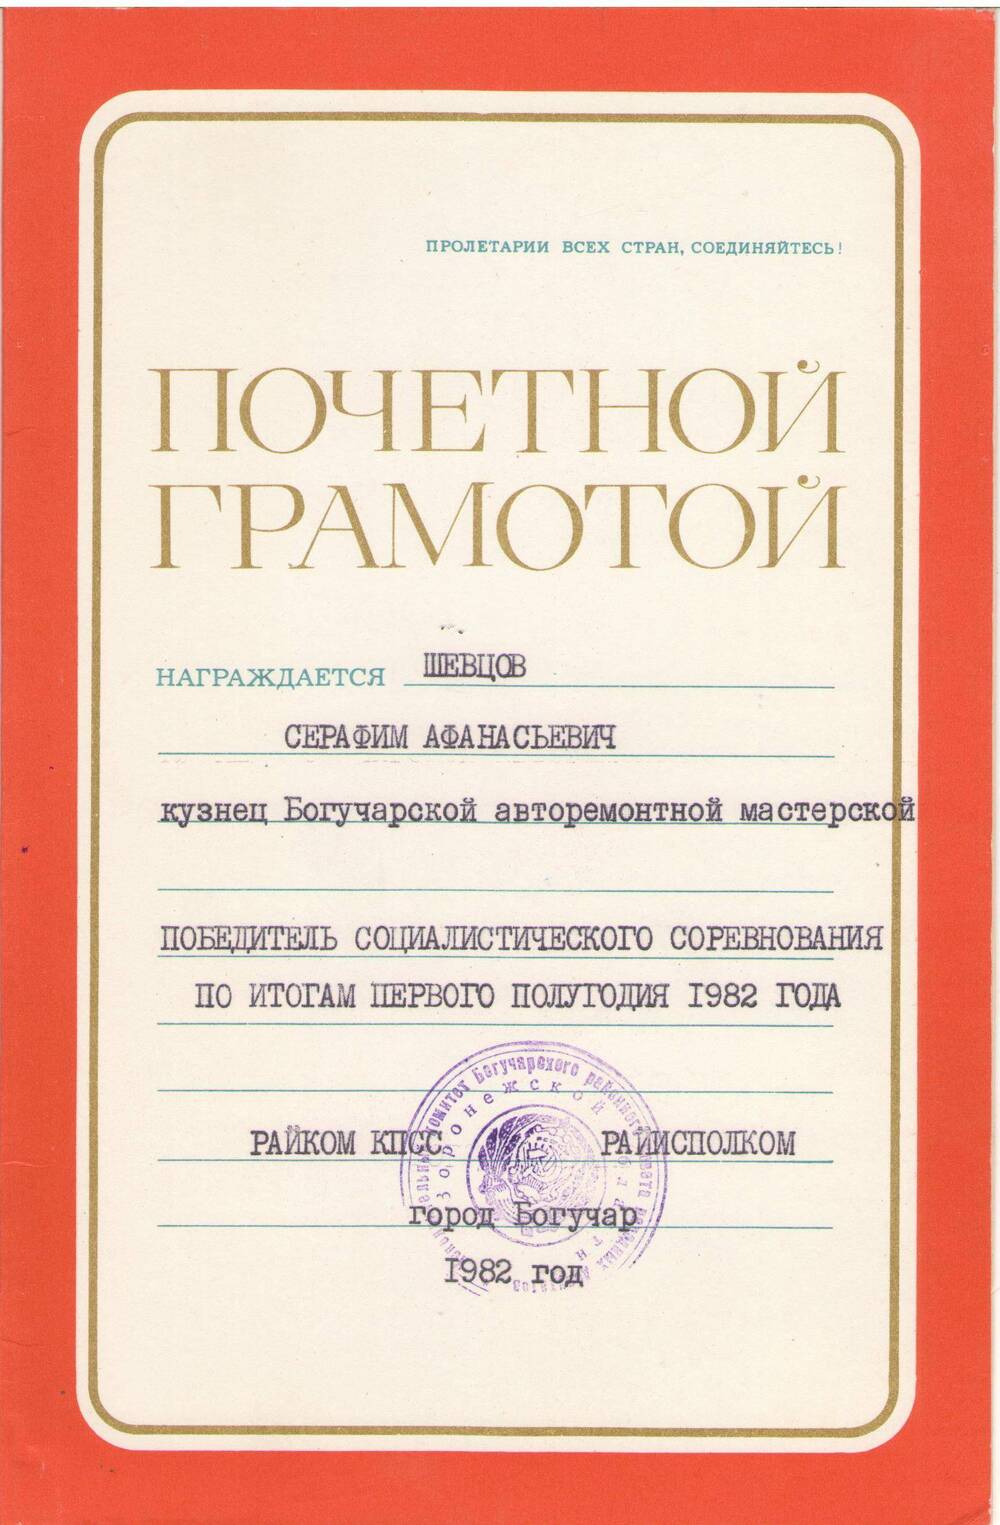 Почетная грамота Шевцову Серафиму Афанасьевичу победителю соц соревнования 2 полугодие 1982 г.